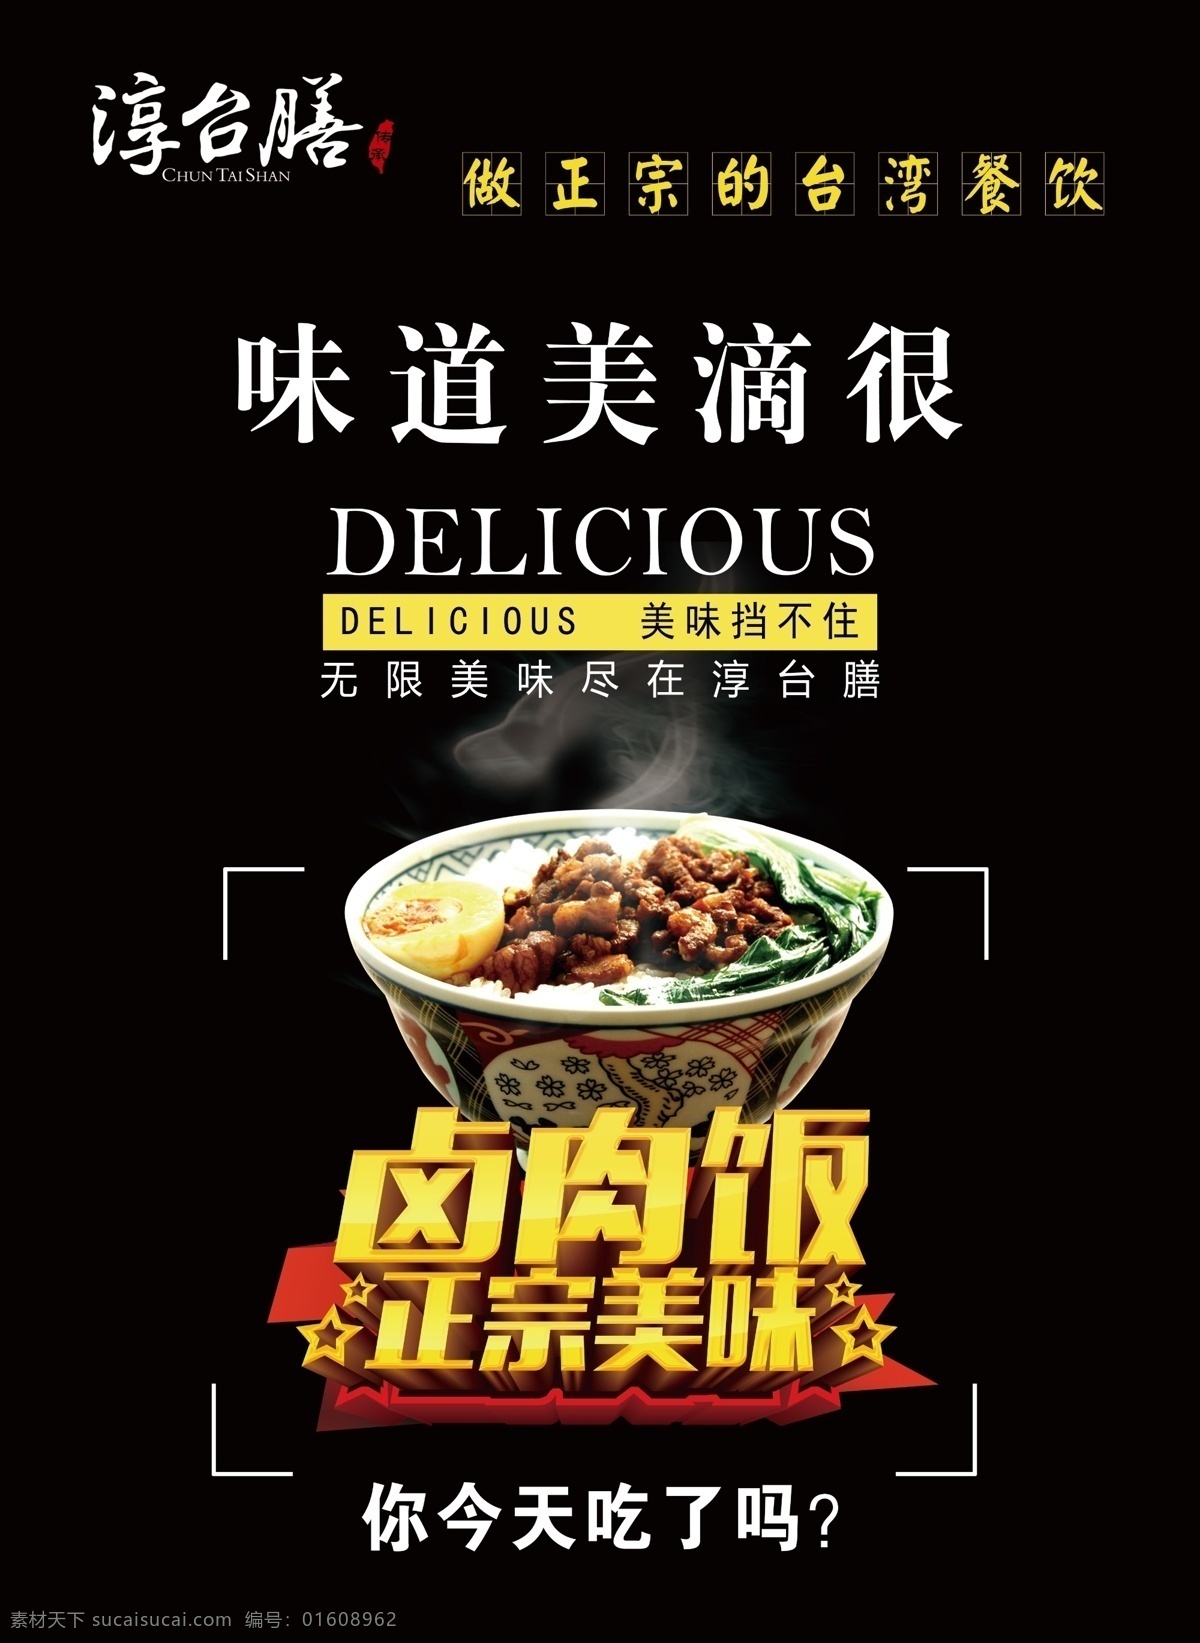 卤肉饭海报 台式简餐海报 海报 简餐 台式 台湾 美食 卤肉饭